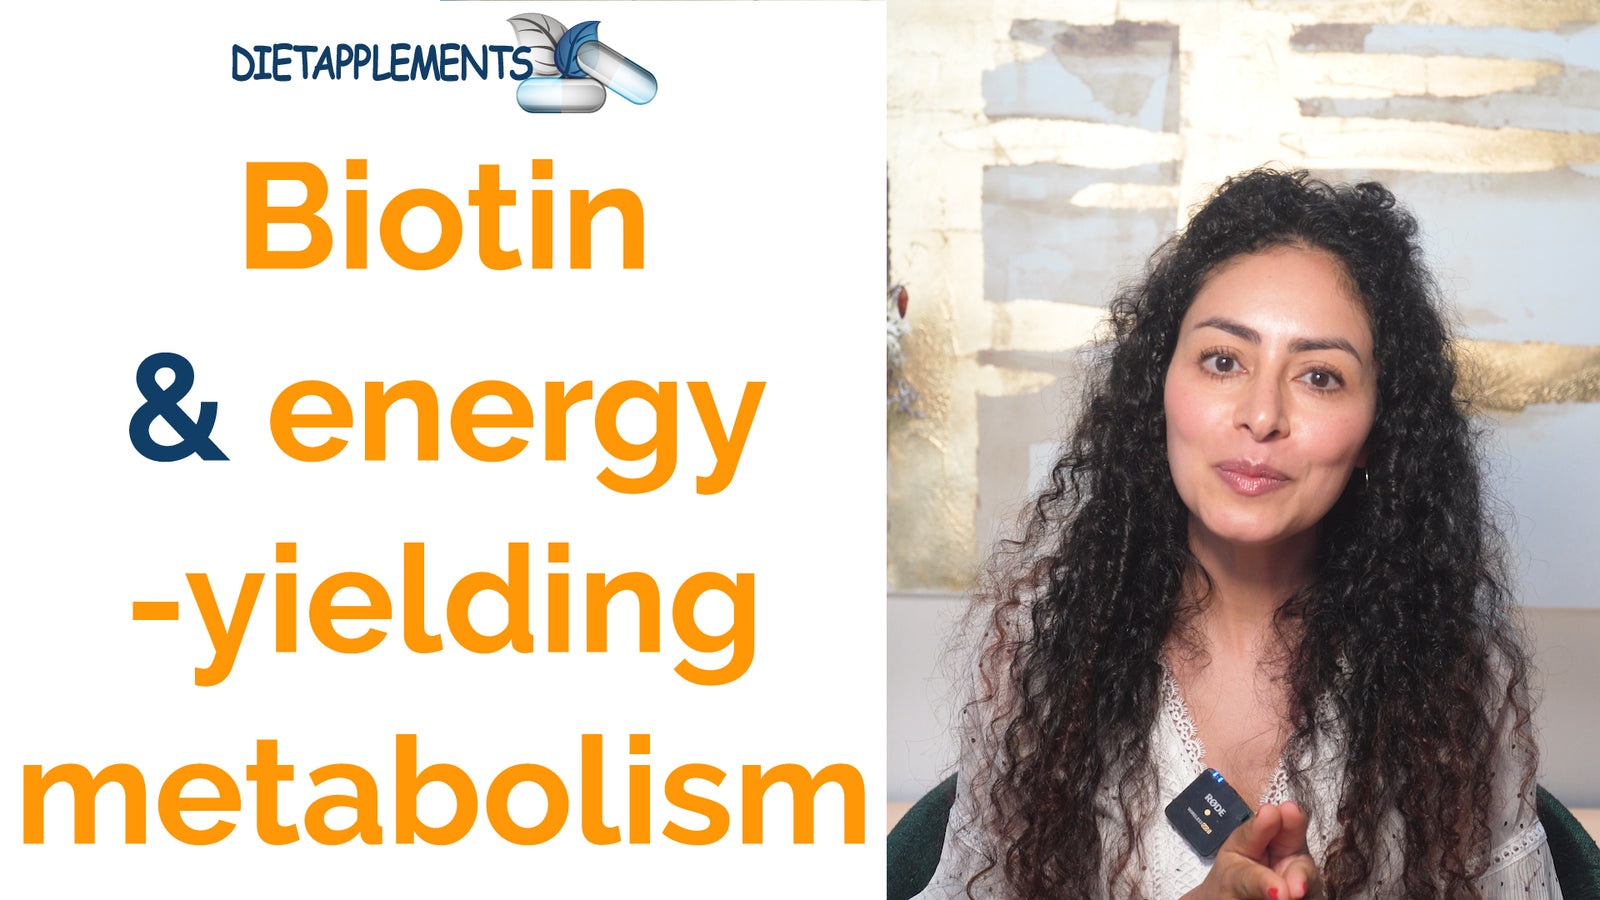 Biotin and energy-yielding metabolism